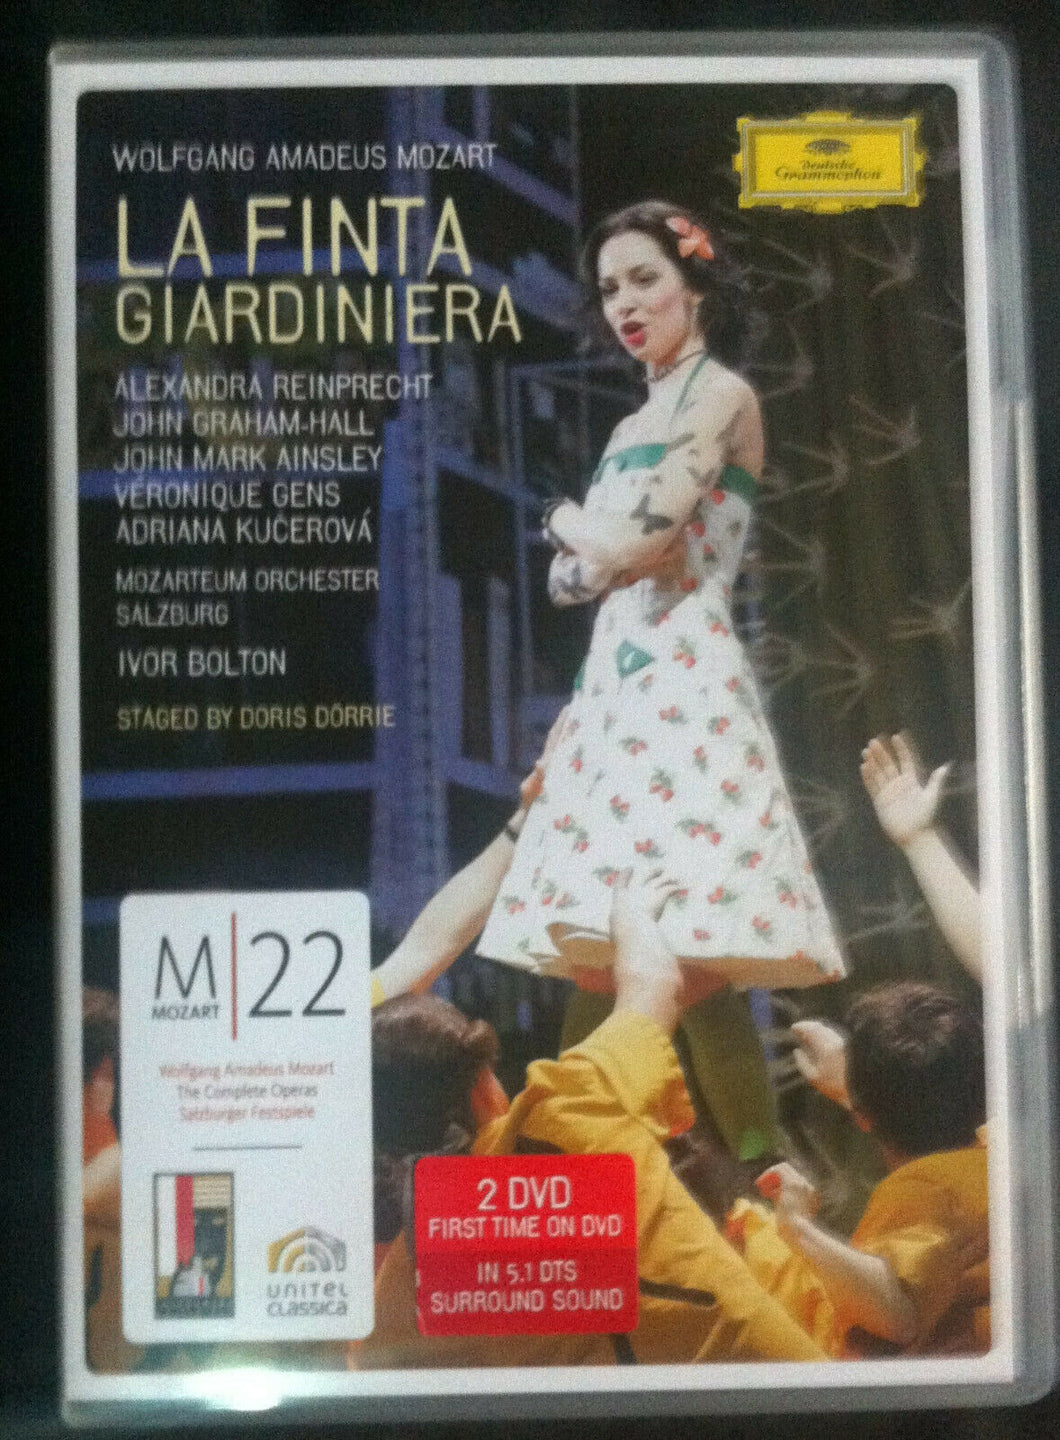 LA FINTA GIARDINIERA - MOZART - 2 DVD